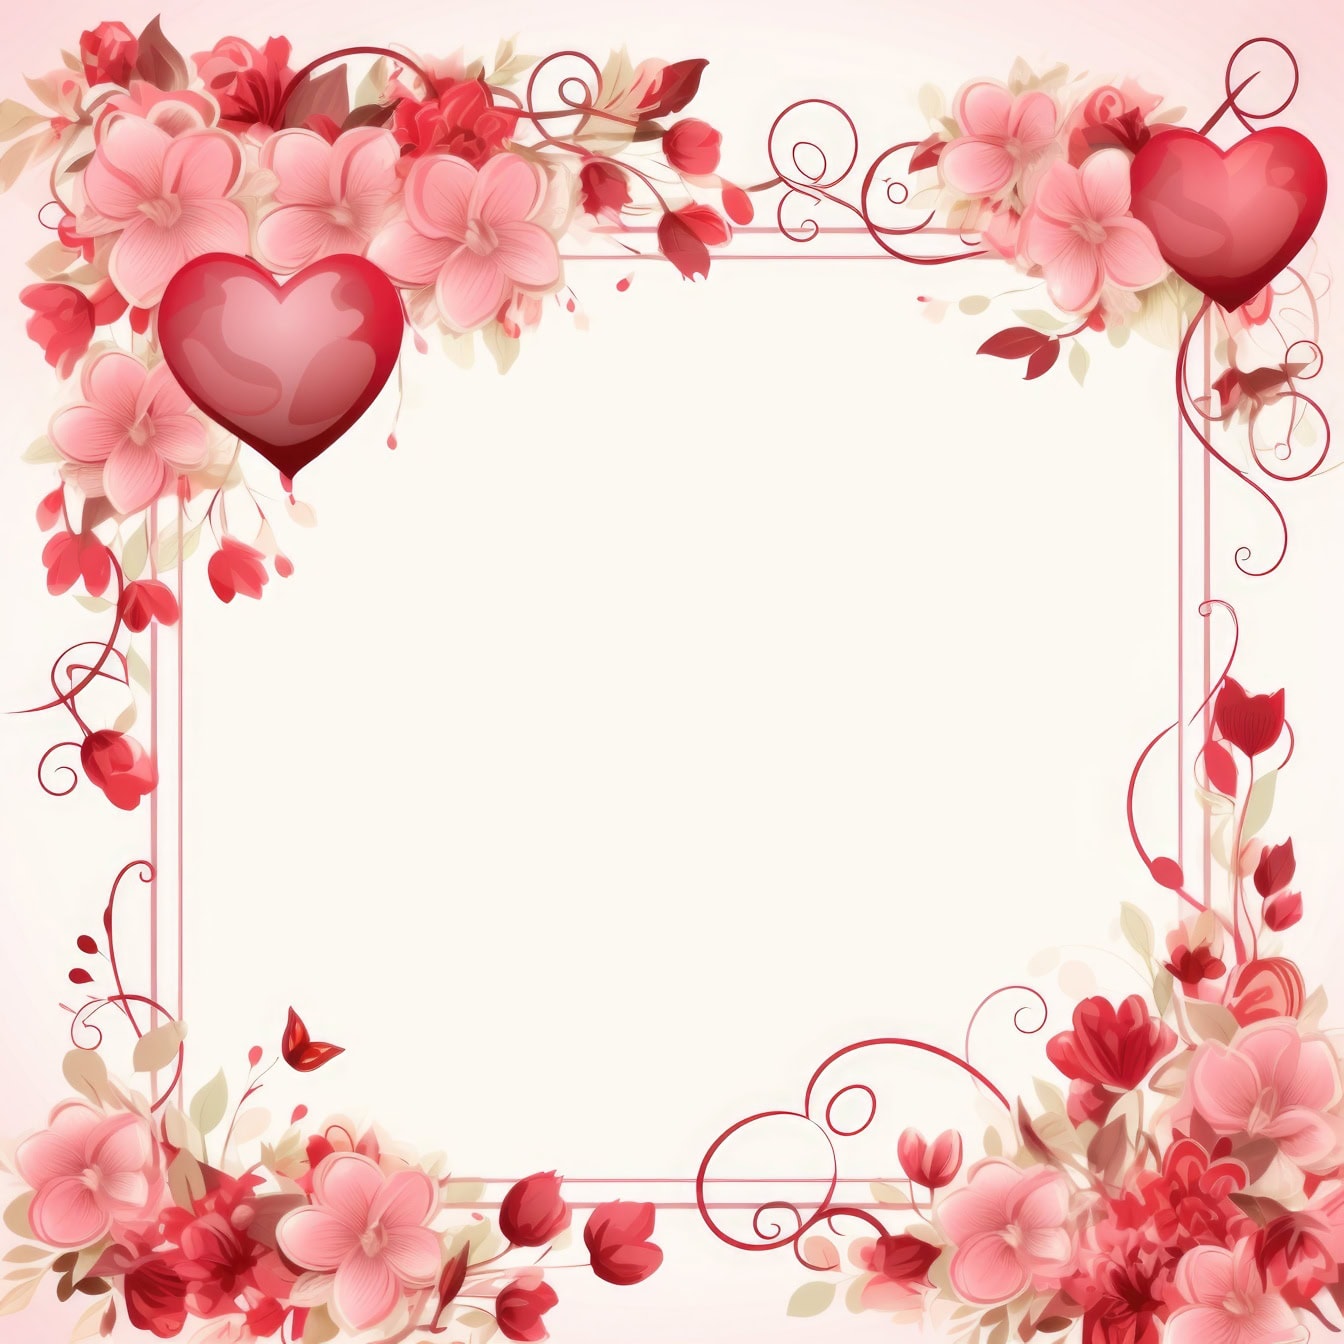 情人节贺卡模板与鲜花和心形框架